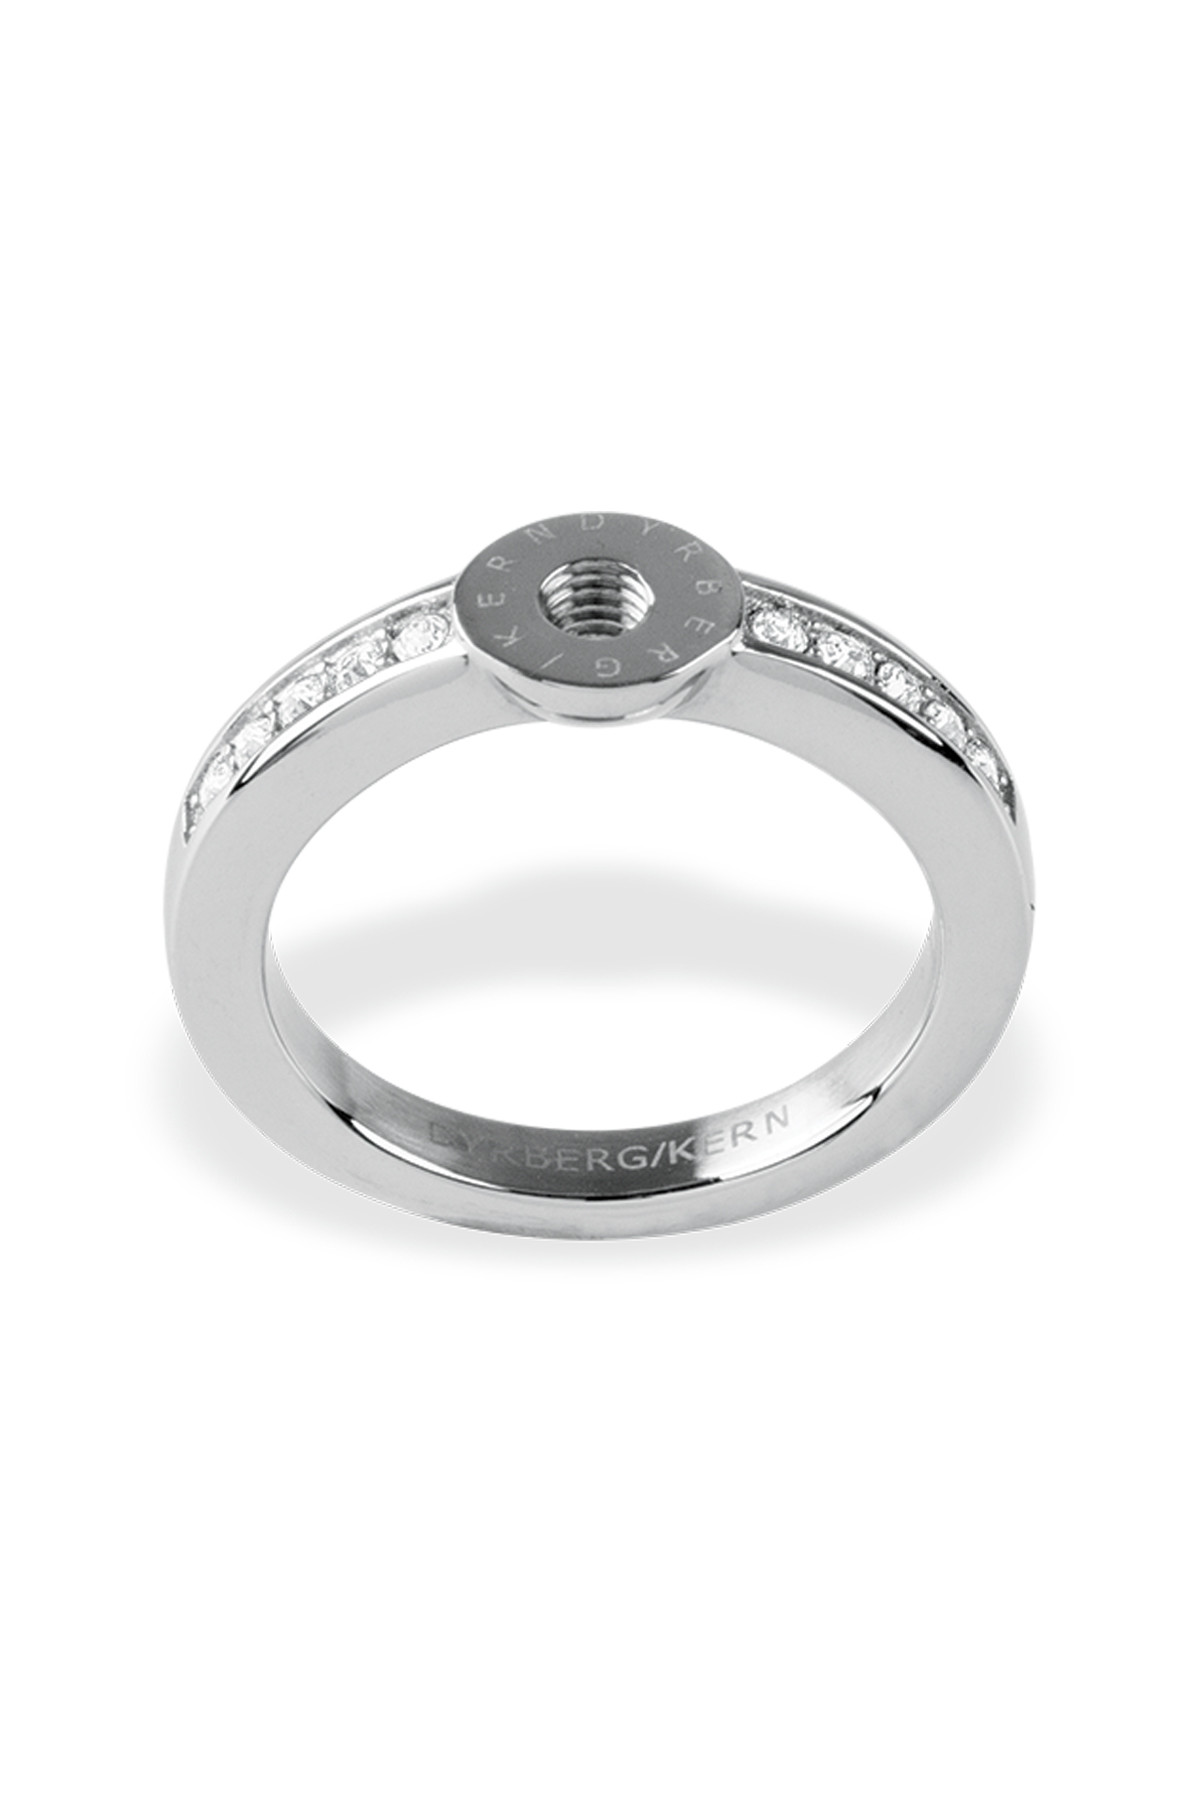 Billede af Dyrberg/Kern Ring Ring, Farve: Sølv, Størrelse: 0/48, Dame